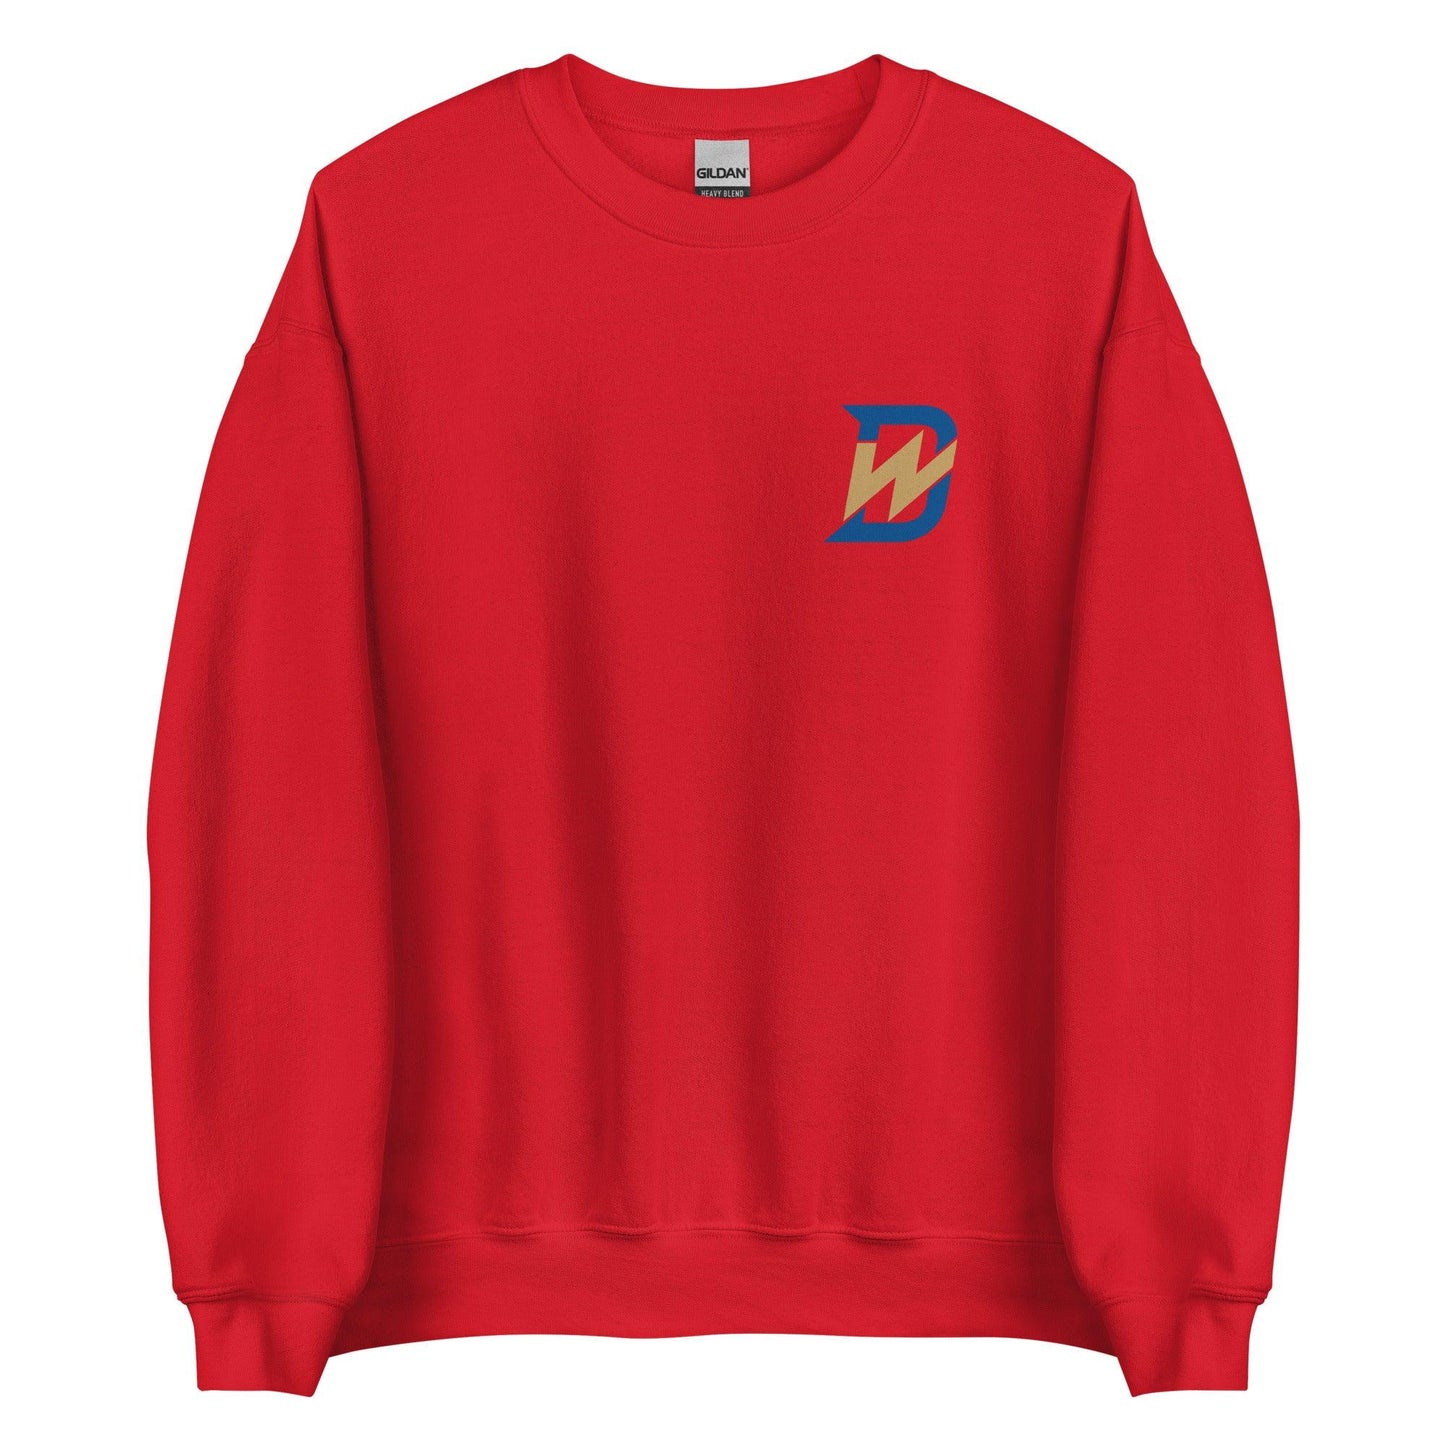 Drew Waters “DW” Sweatshirt - Fan Arch